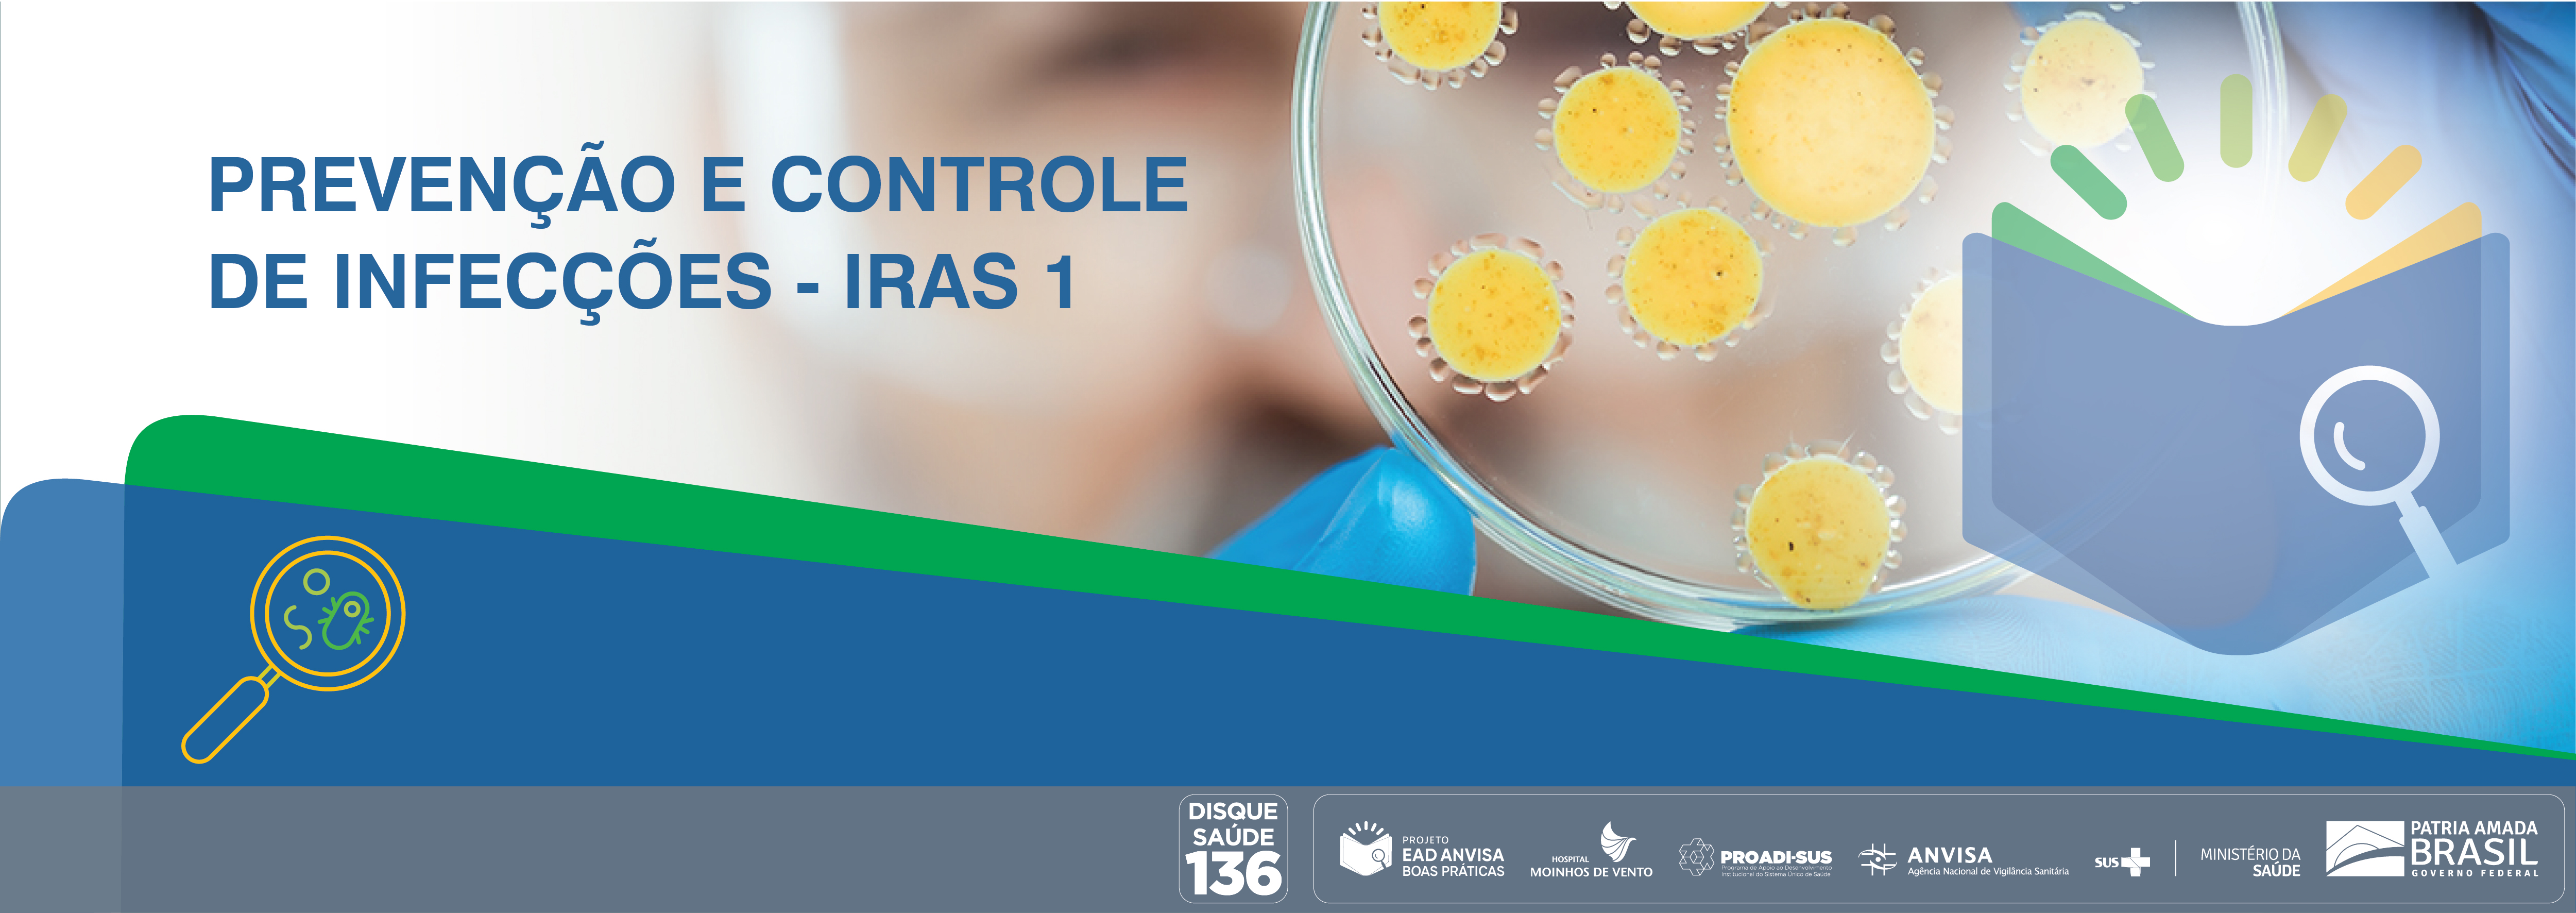 Boas Práticas de Inspeção em Serviços de Saúde com foco nas Ações de Prevenção e Controle das Infecções Relacionadas à Assistência à Saúde e Resistência Microbiana (RM) - Módulo 1 ANVISA_2021_IRAS1_V2